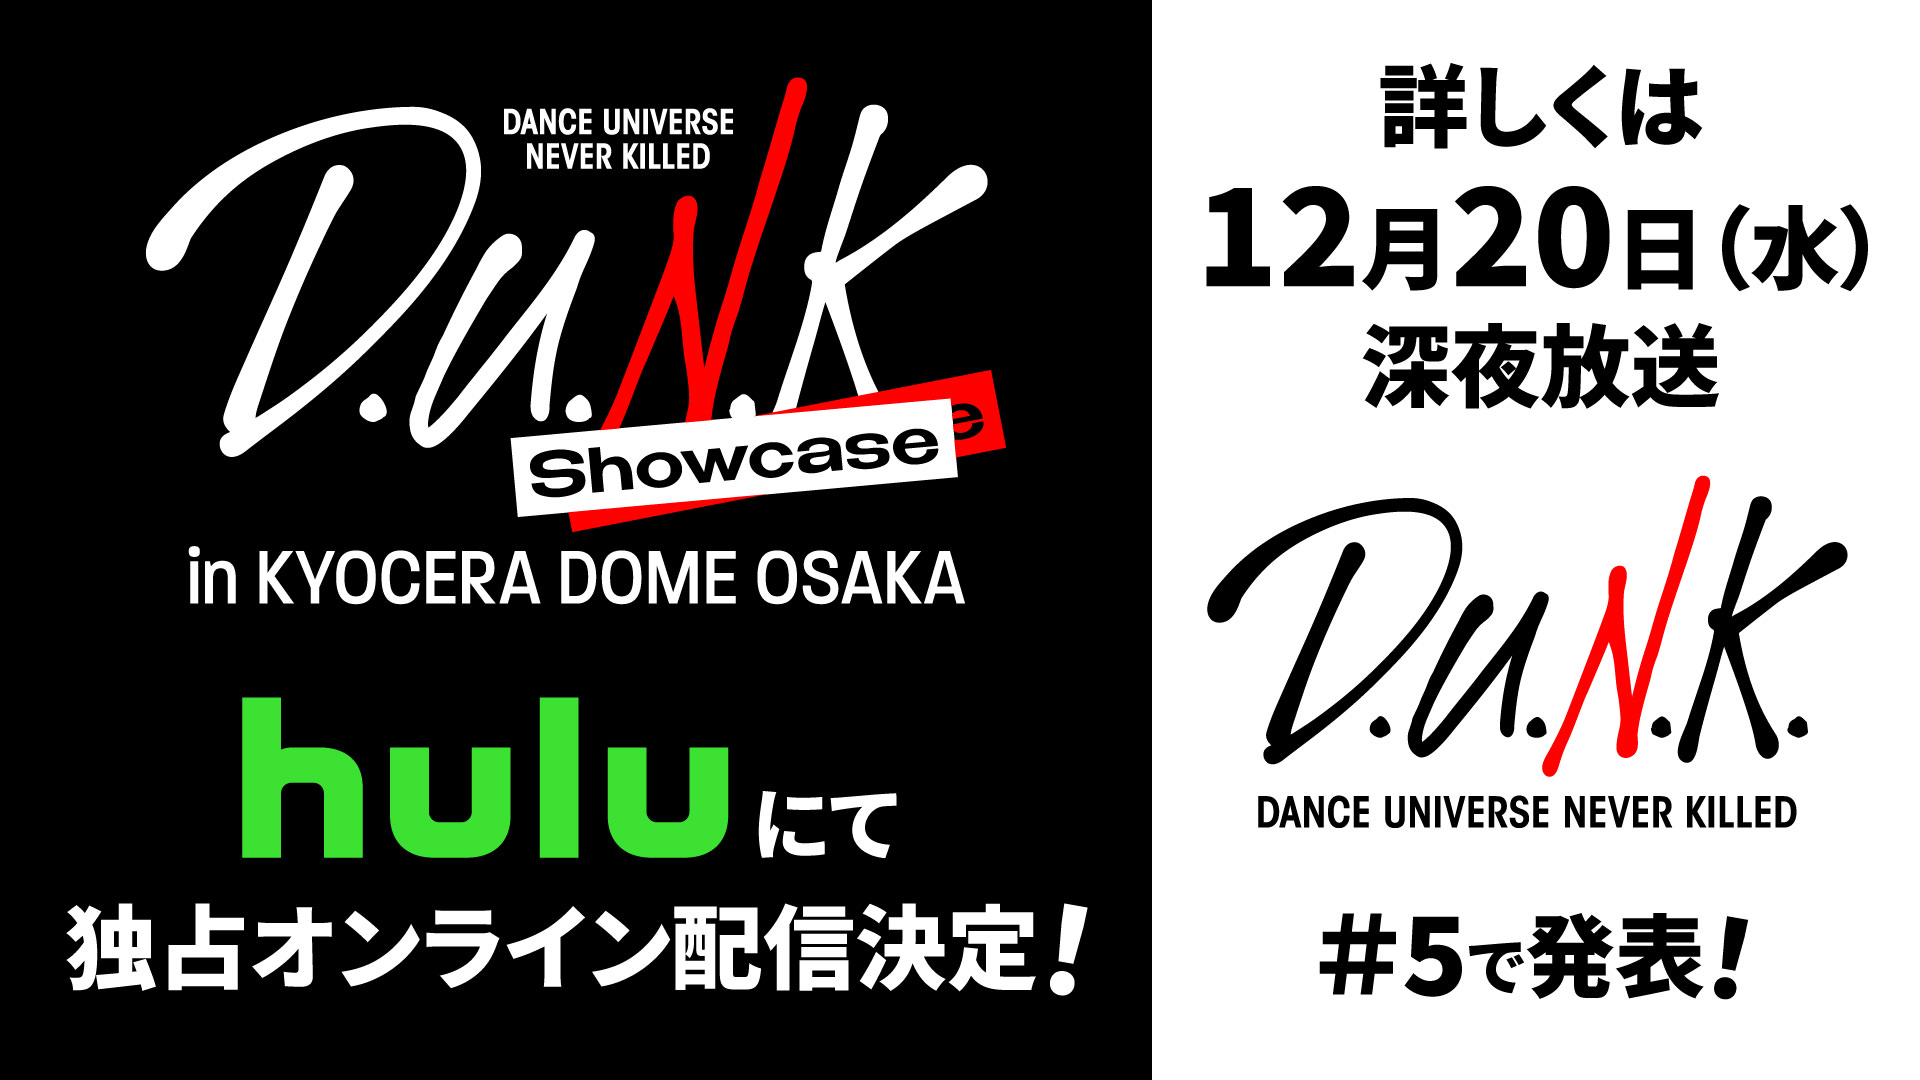 「D.U.N.K. Showcase in KYOCERA DOME OSAKA」Huluにて独占配信決定！詳しくは12月20日（水）深夜放送「D.U.N.K.」＃5で発表！